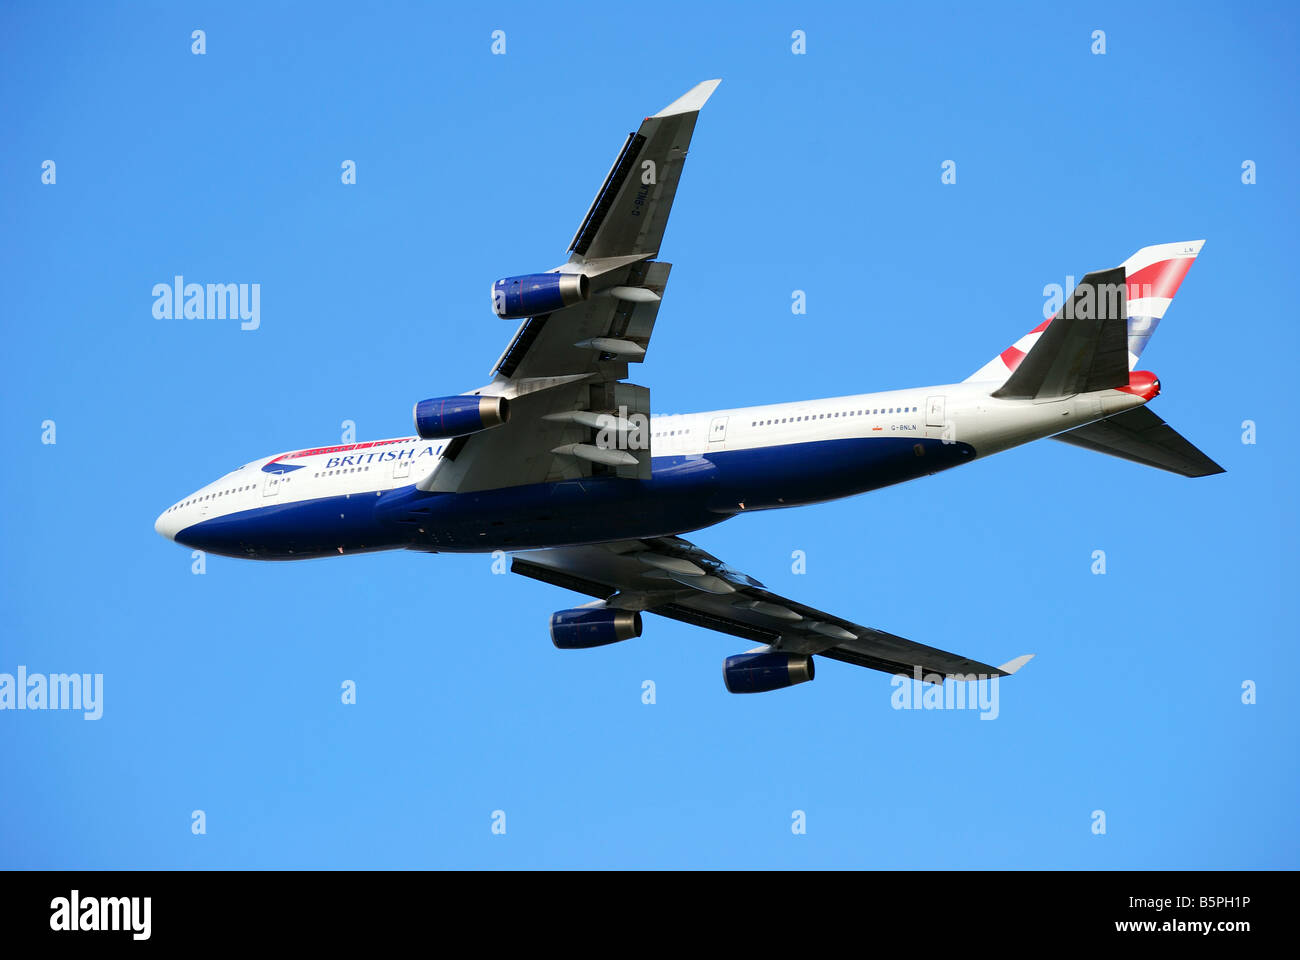 British Airways Boeing 747-400 de décoller de l'aéroport de Heathrow, Londres, Angleterre, Royaume-Uni Banque D'Images